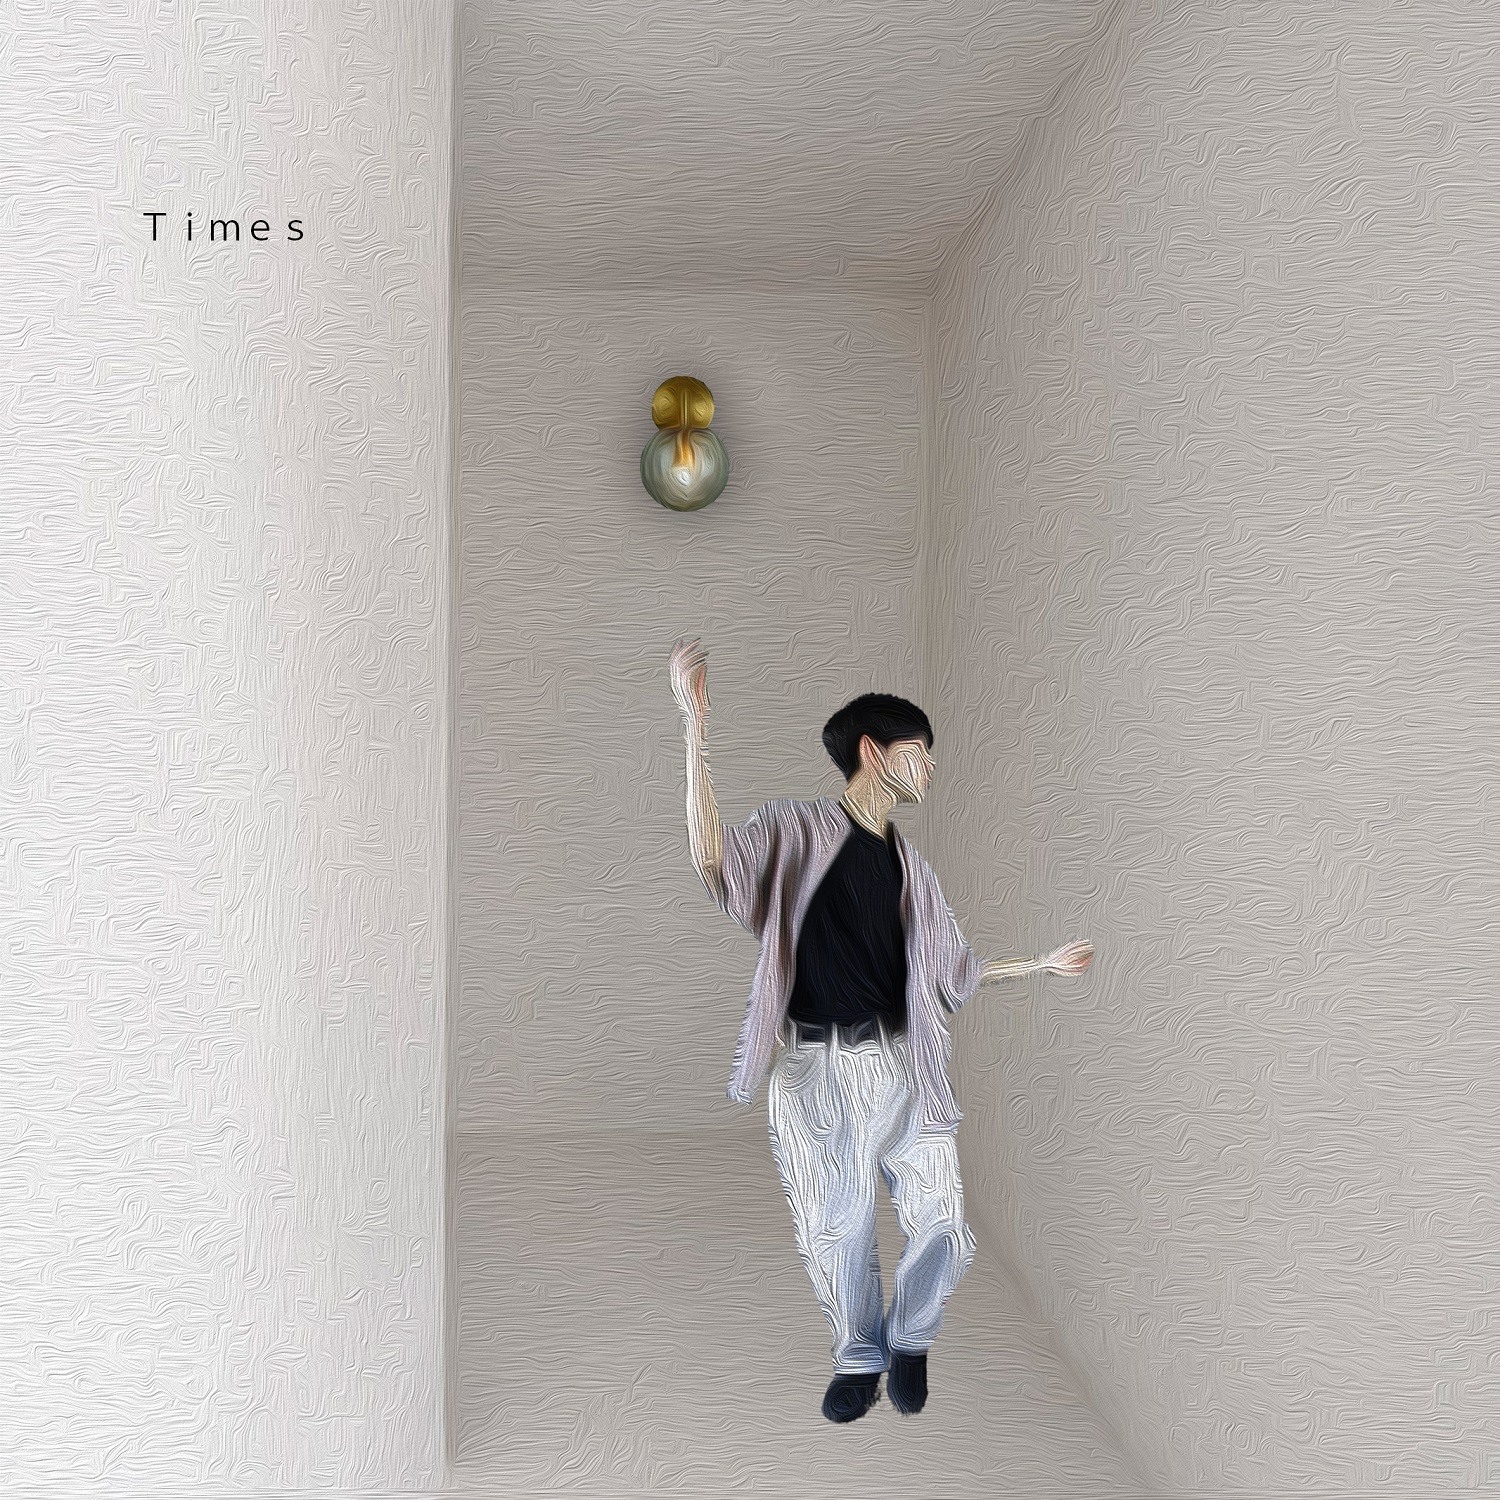 Sasuke Nhk Eテレ アクティブ10 マスと テーマソングとして書き下ろした新曲 Times がデジタルシングルとして配信決定 Musicman